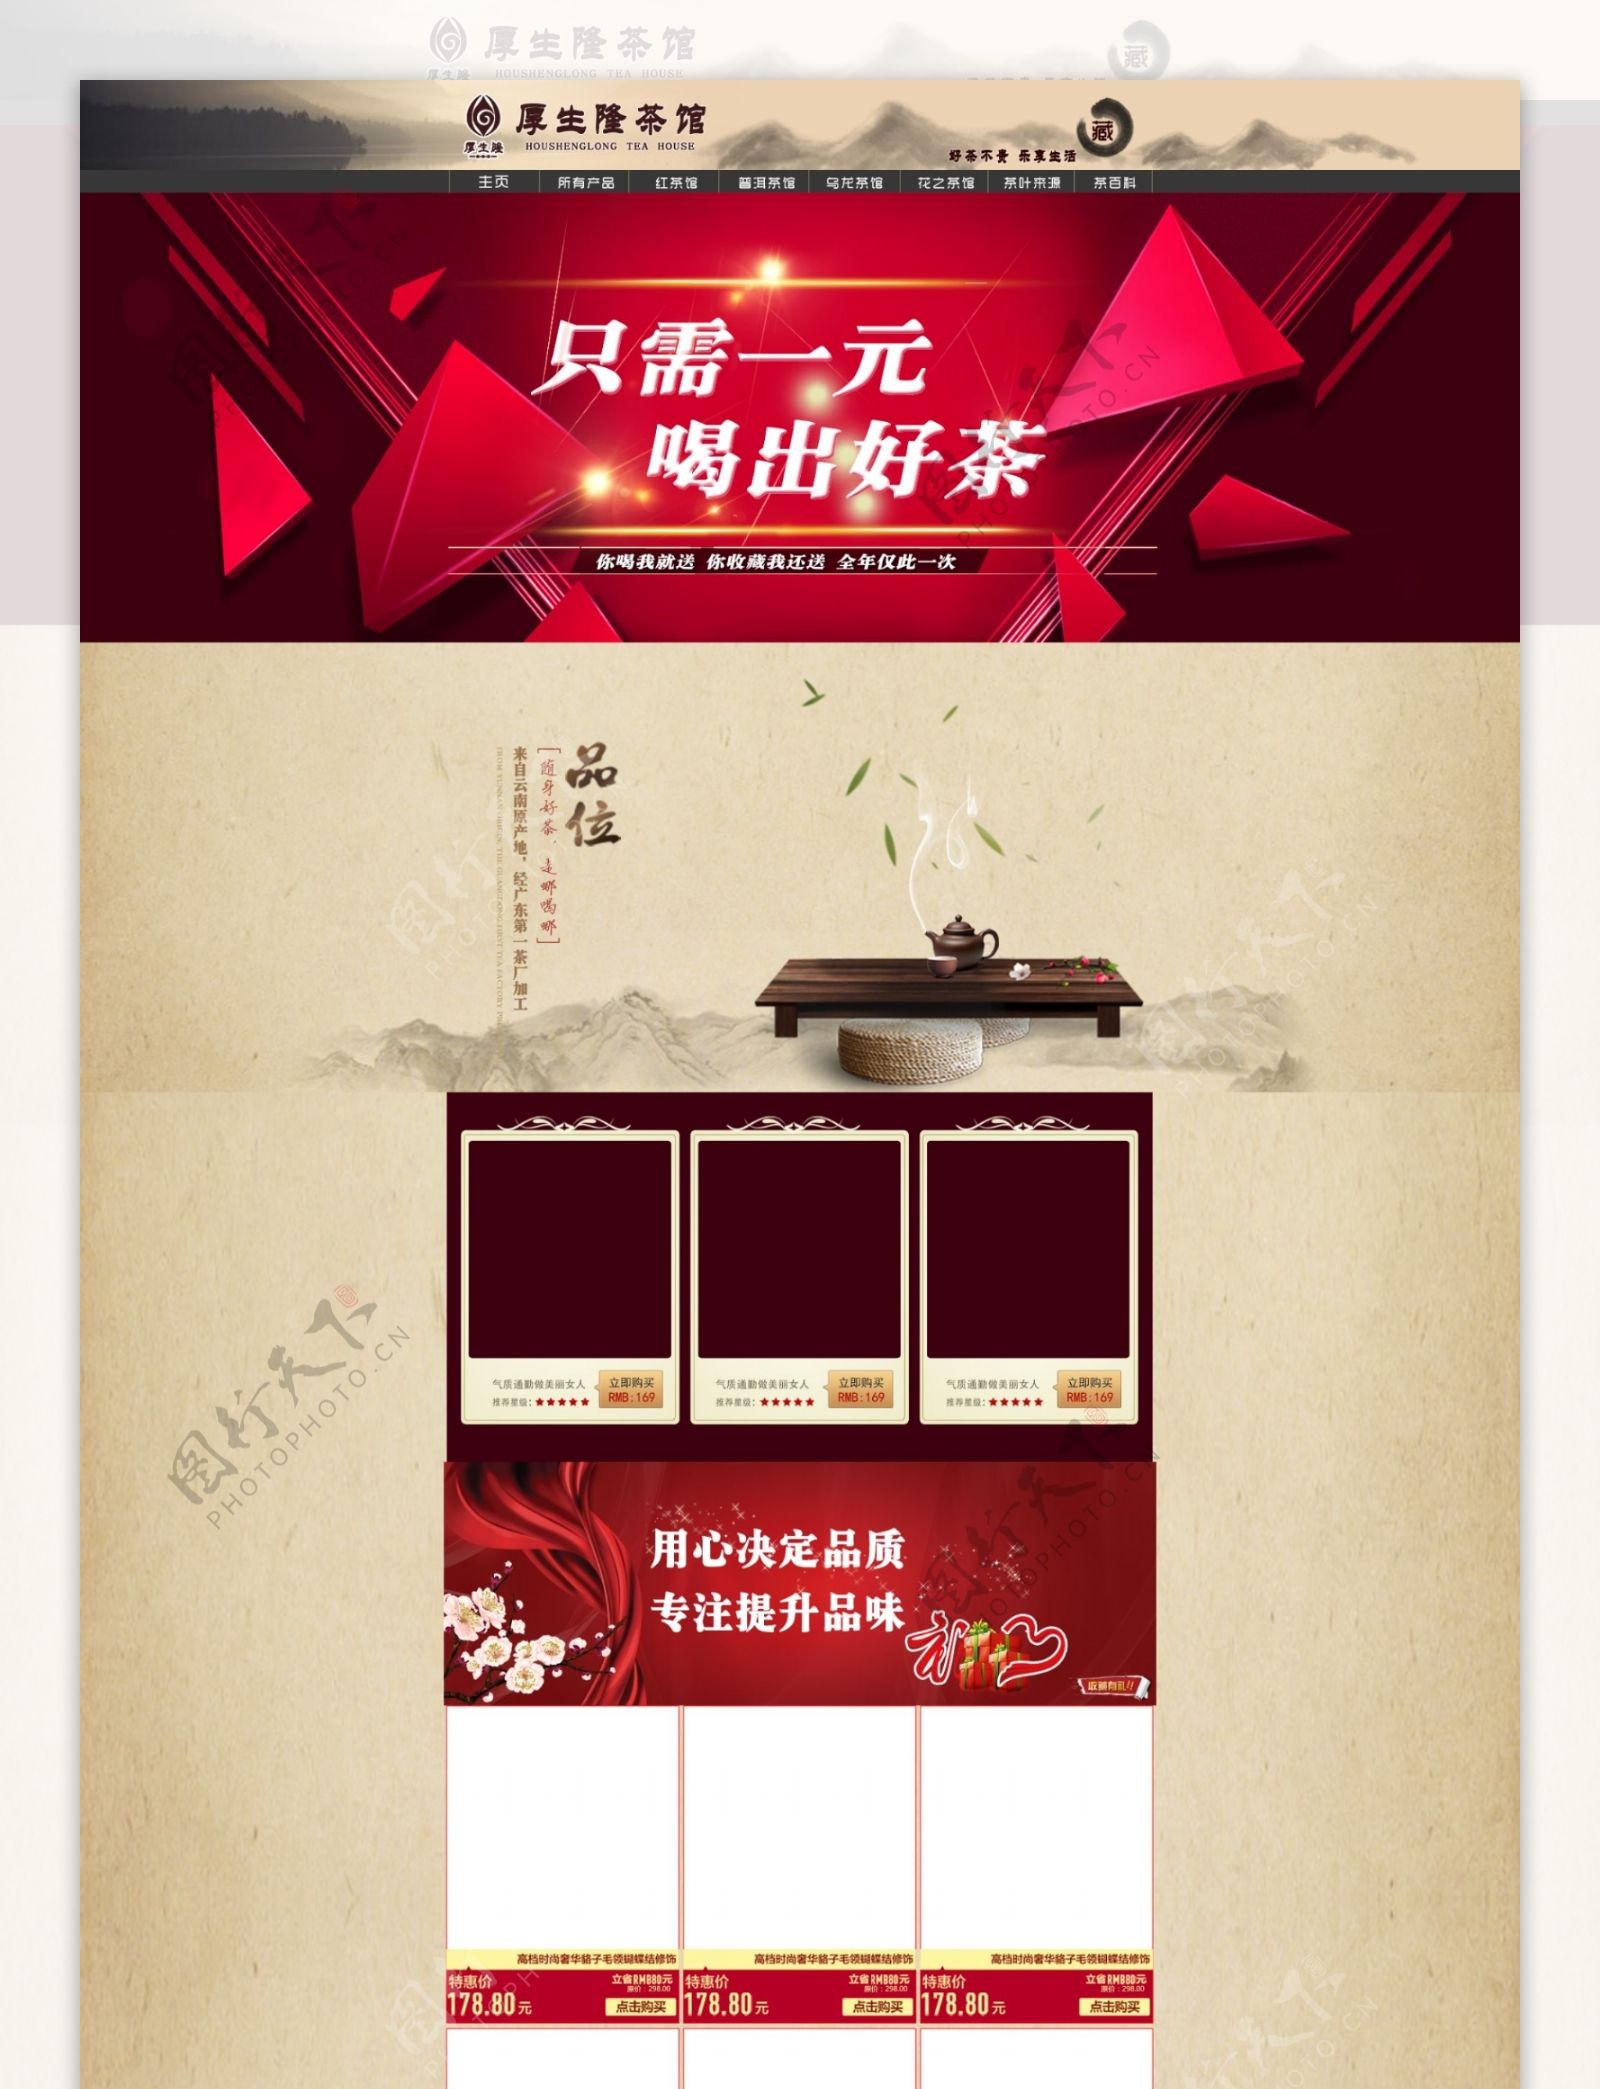 2015年淘宝茶叶主页设计